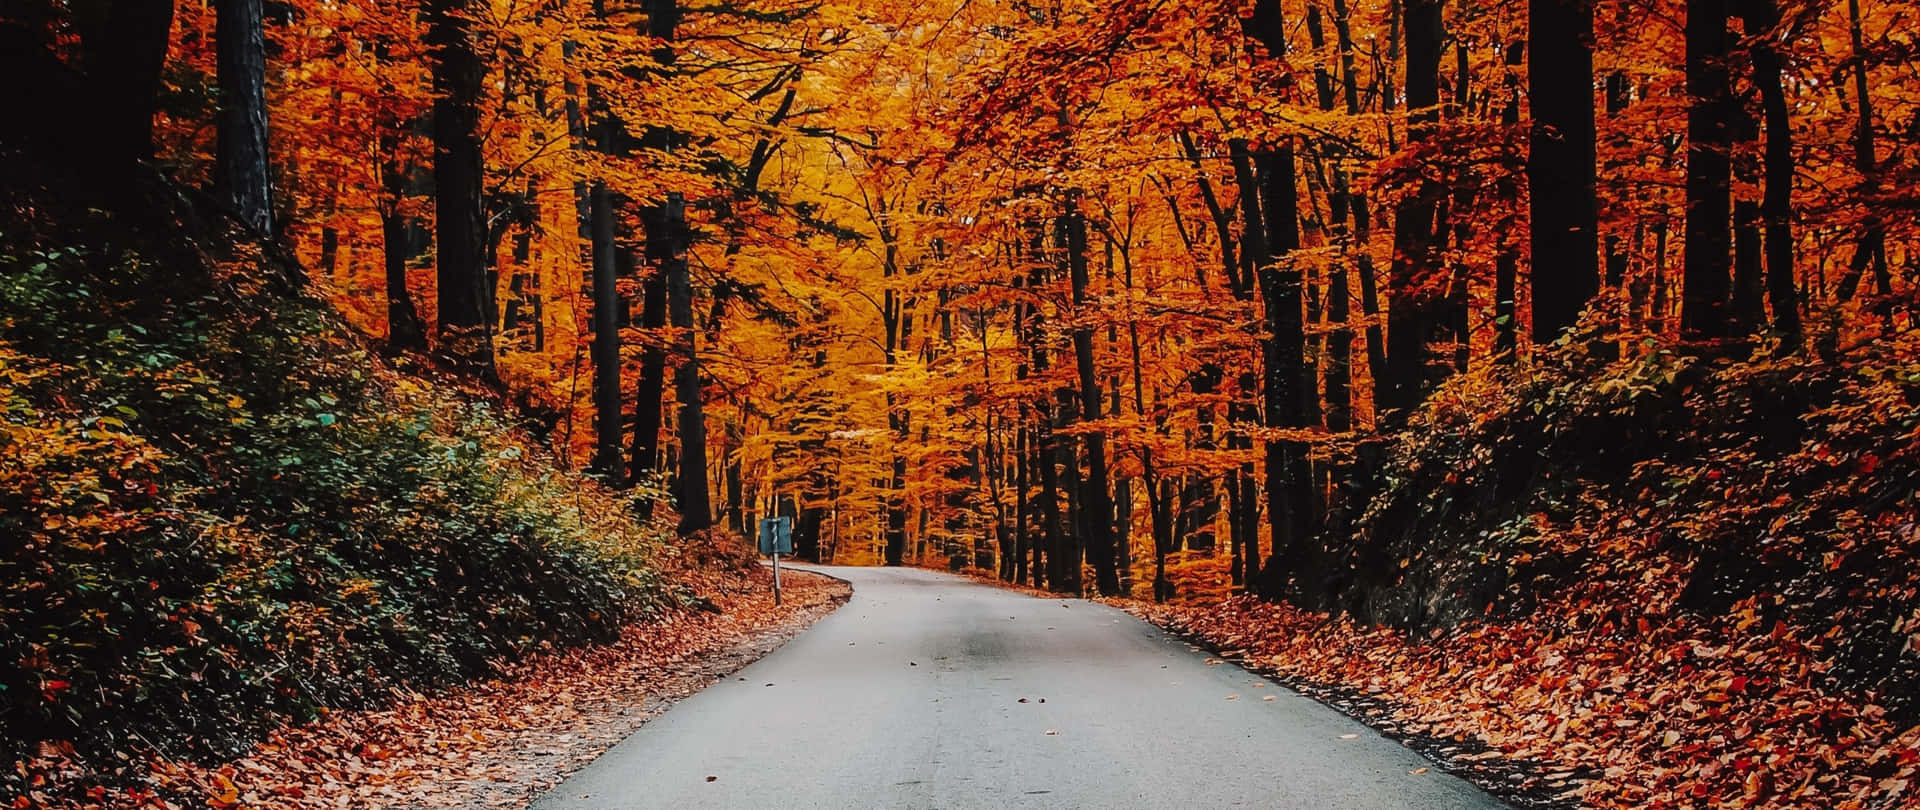 Tag et åndedragende efterår syn af farverige blade og tåget skove. Wallpaper